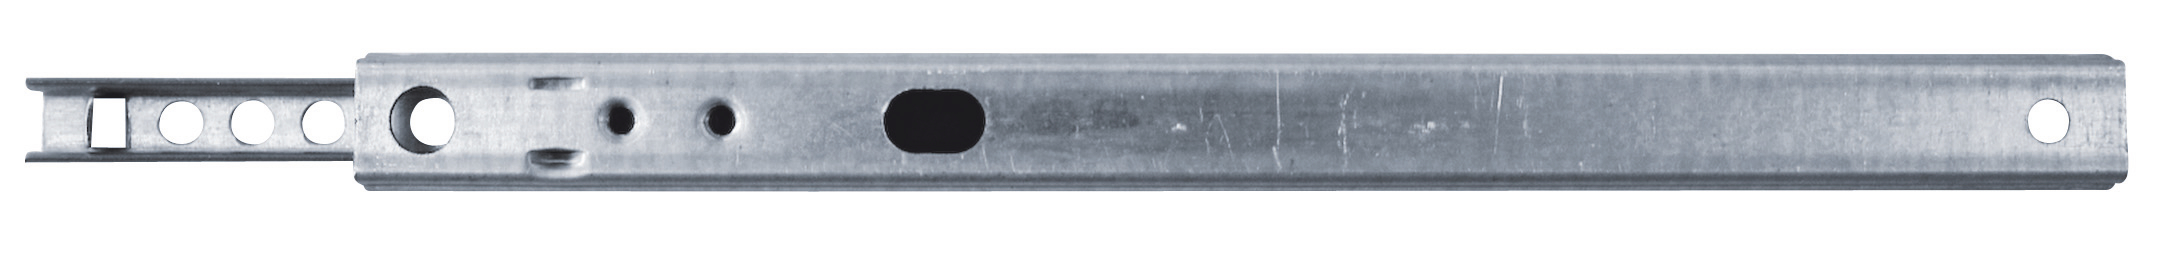 HSI Schubladenführung vern. 17x438/342 mm Kugel-Teilauszug, lose mit EAN